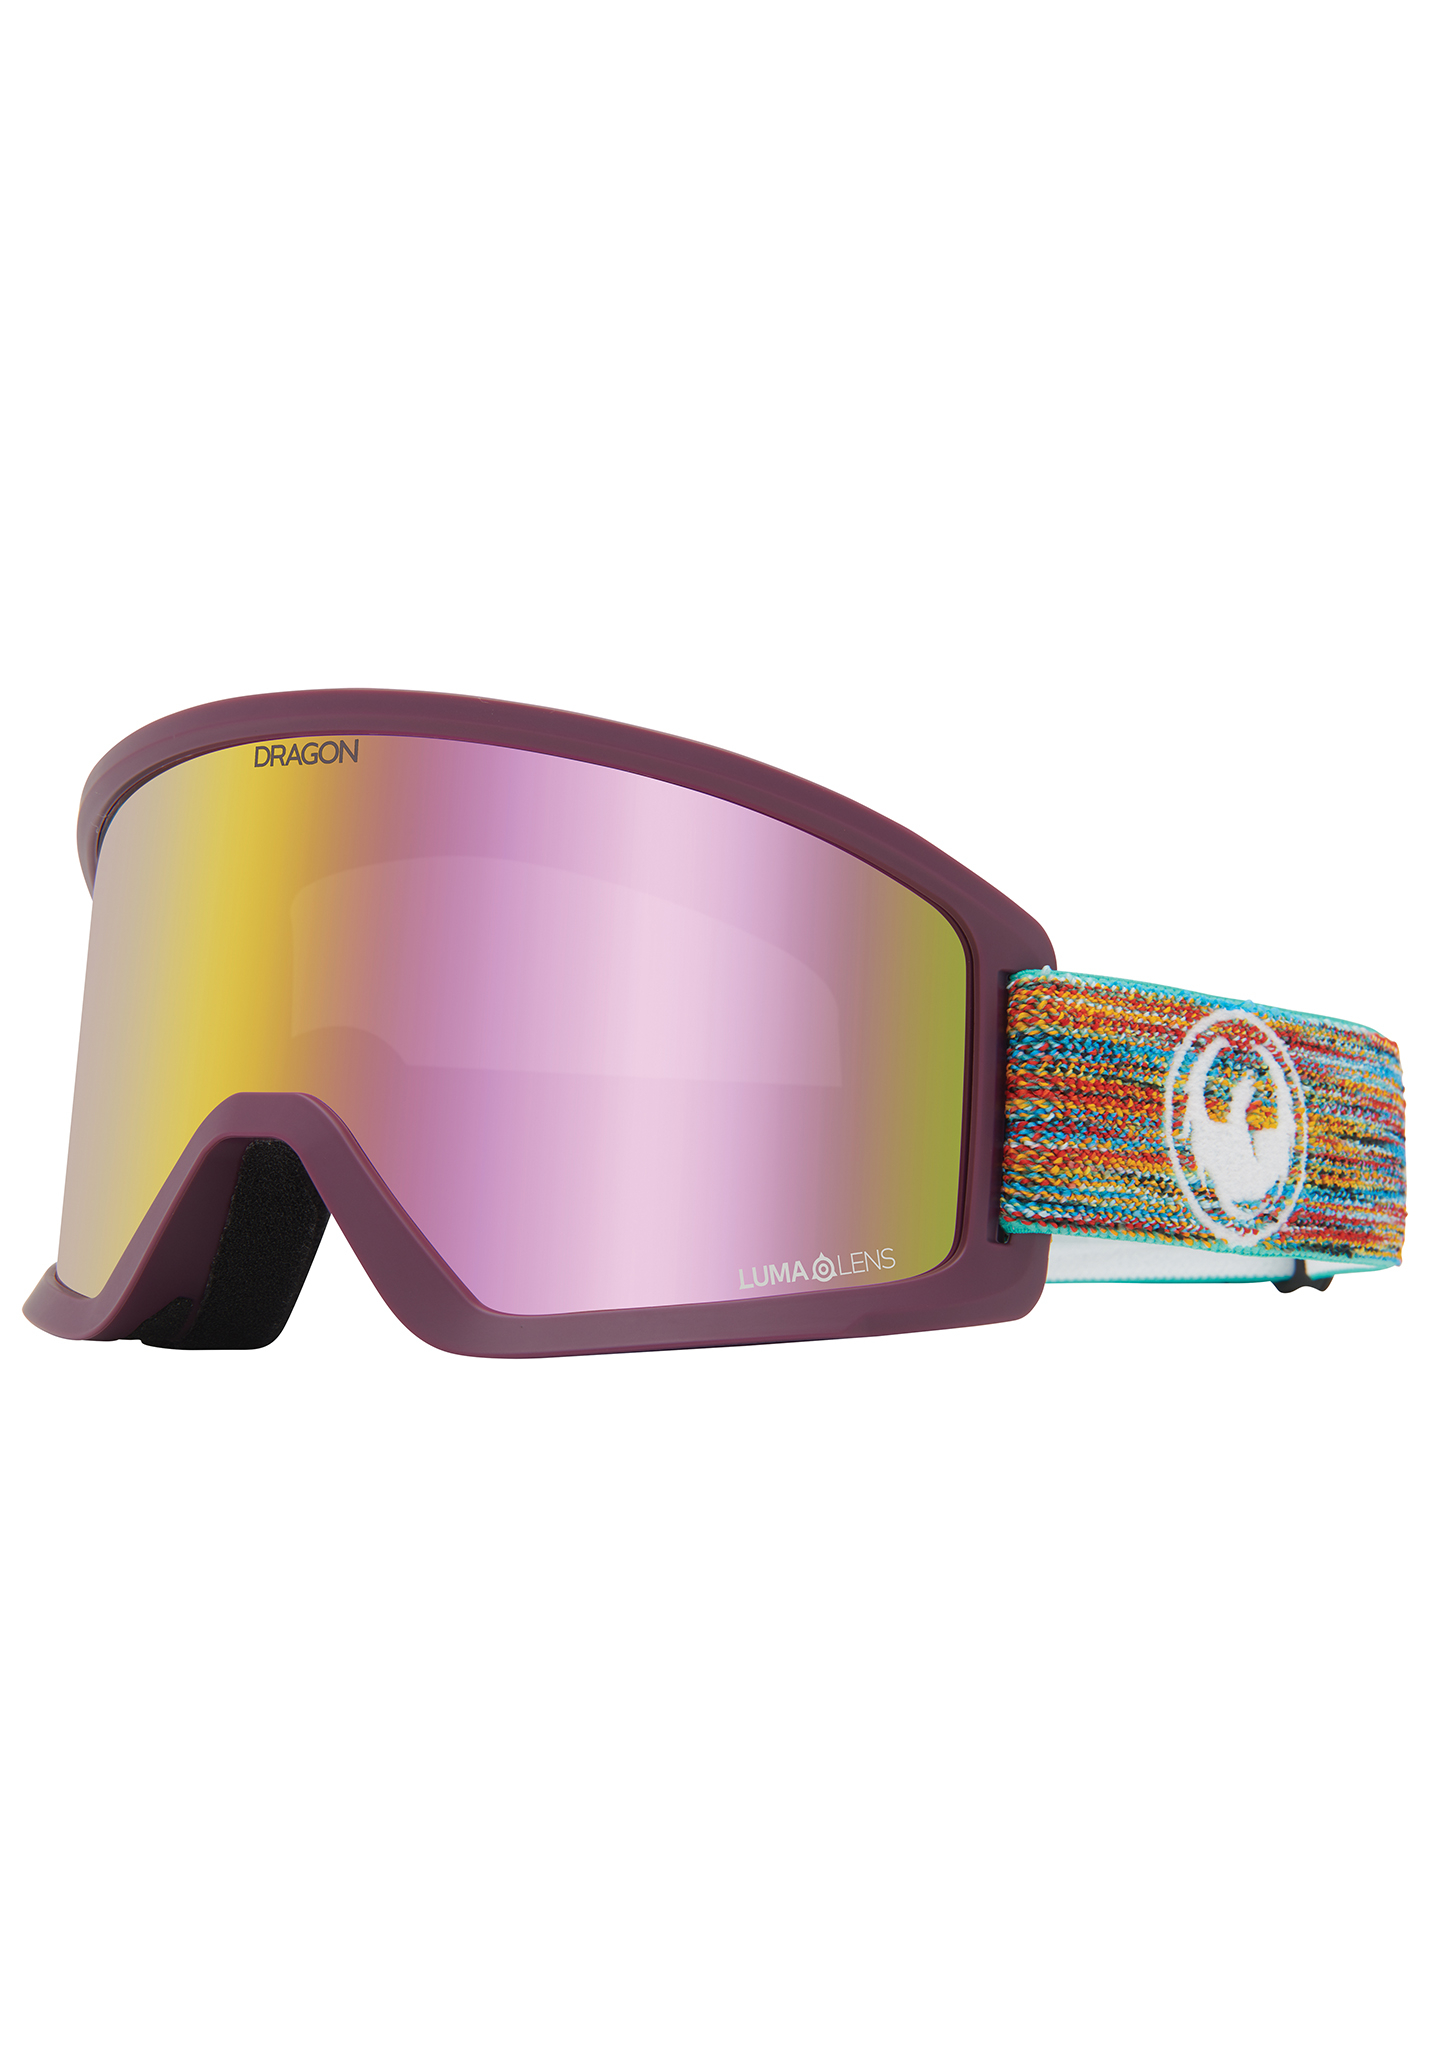 Dragon DX3 Snowboardbrillen gemeinsam fetzen / lumalens pink ion One Size